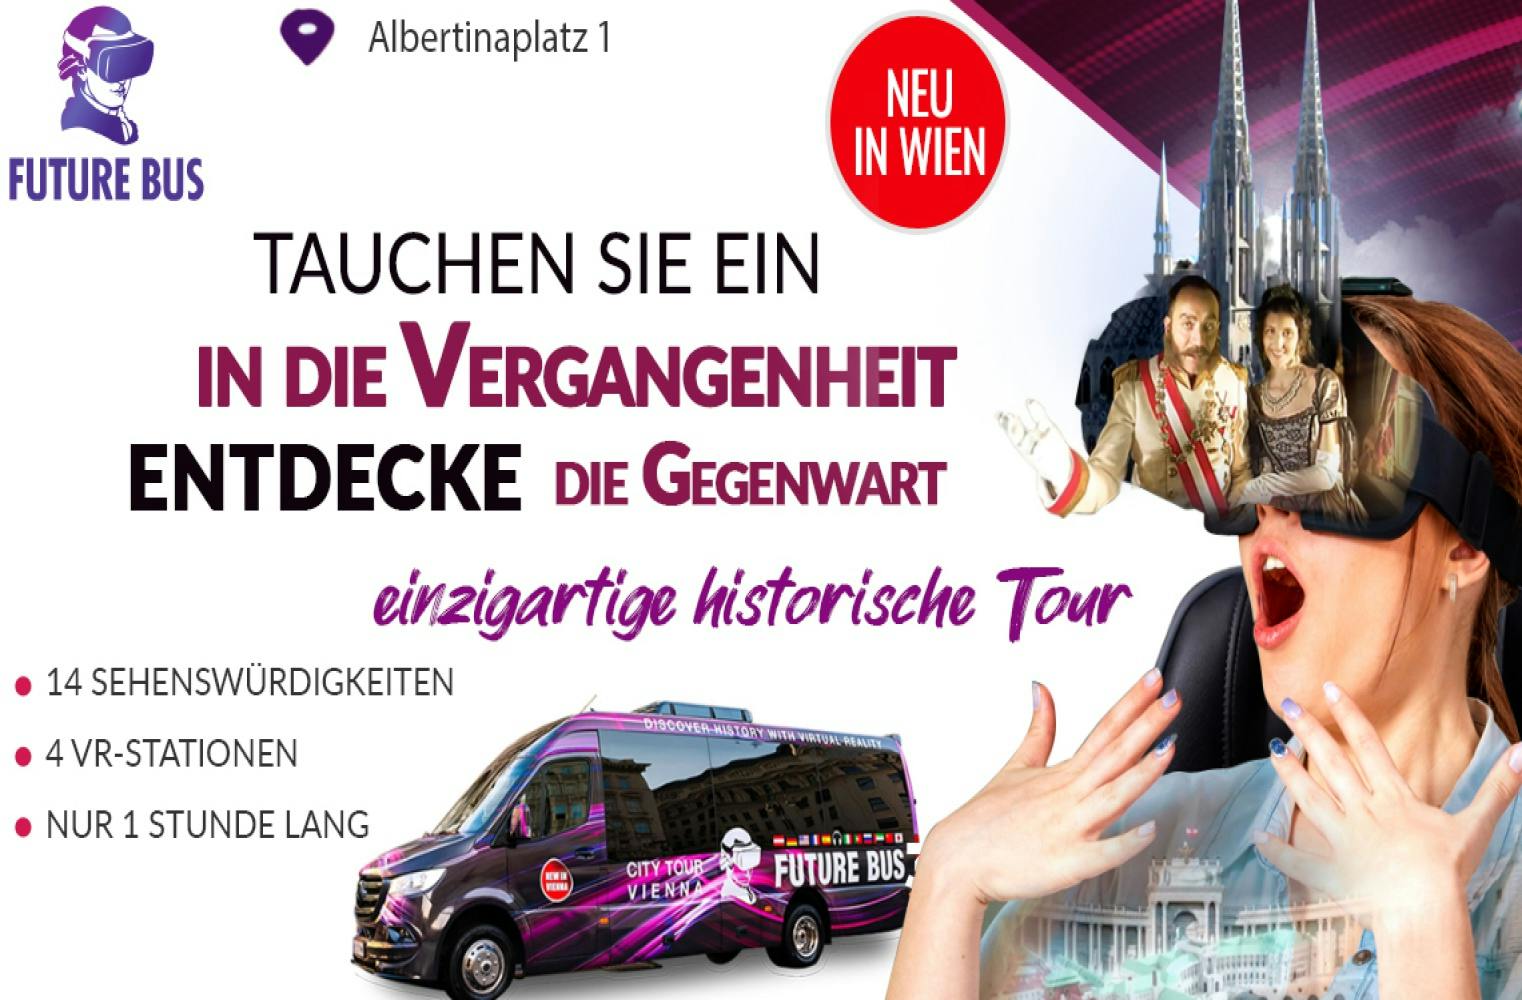 VR Bustour durch Wien | reise durch die Geschichte Wiens